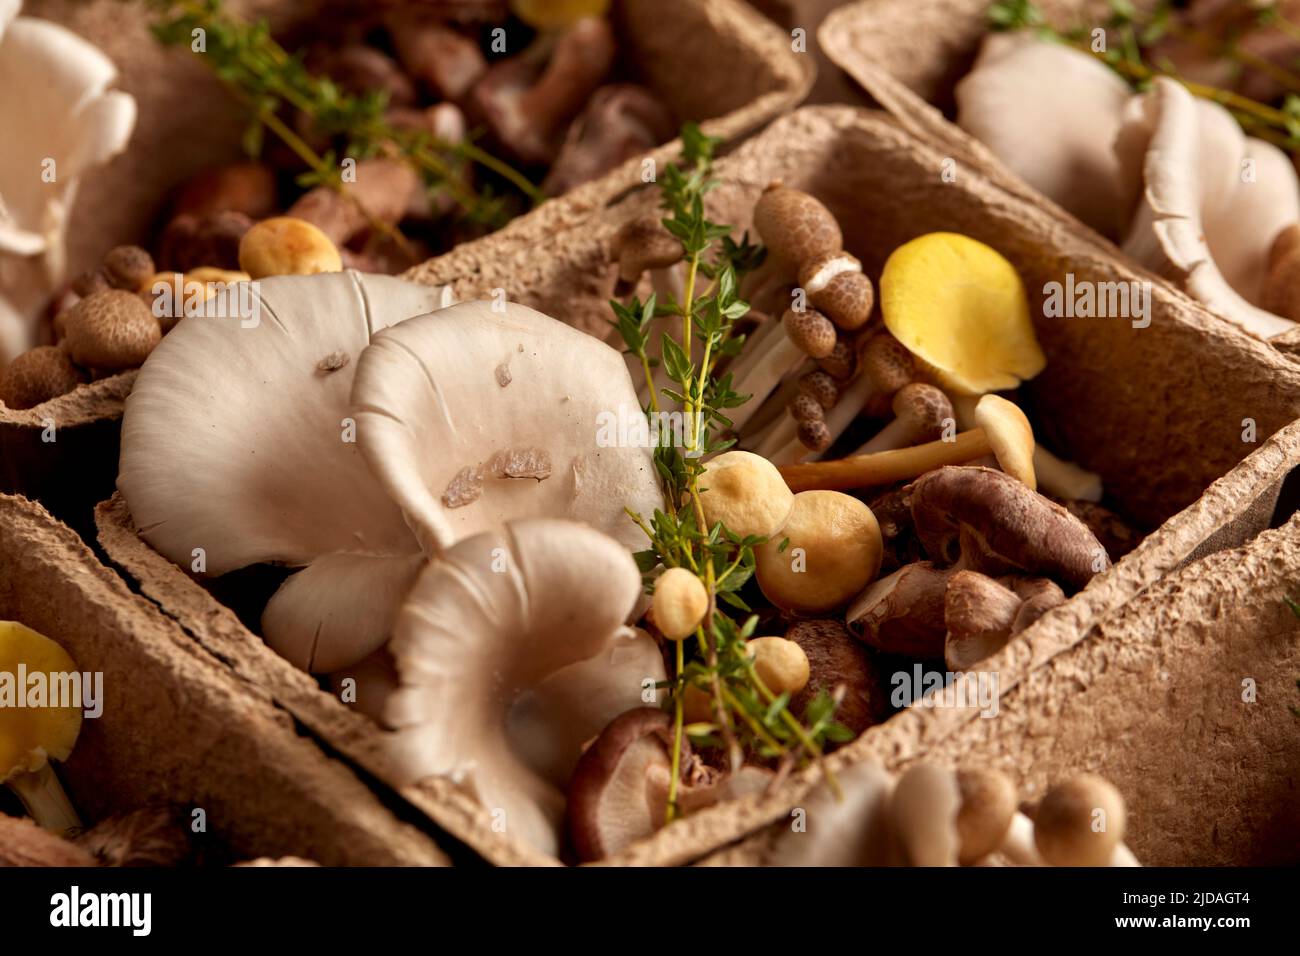 Gros plan de champignons comestibles dans une boîte en carton, champignons comestibles cultivés à un fongium. Banque D'Images